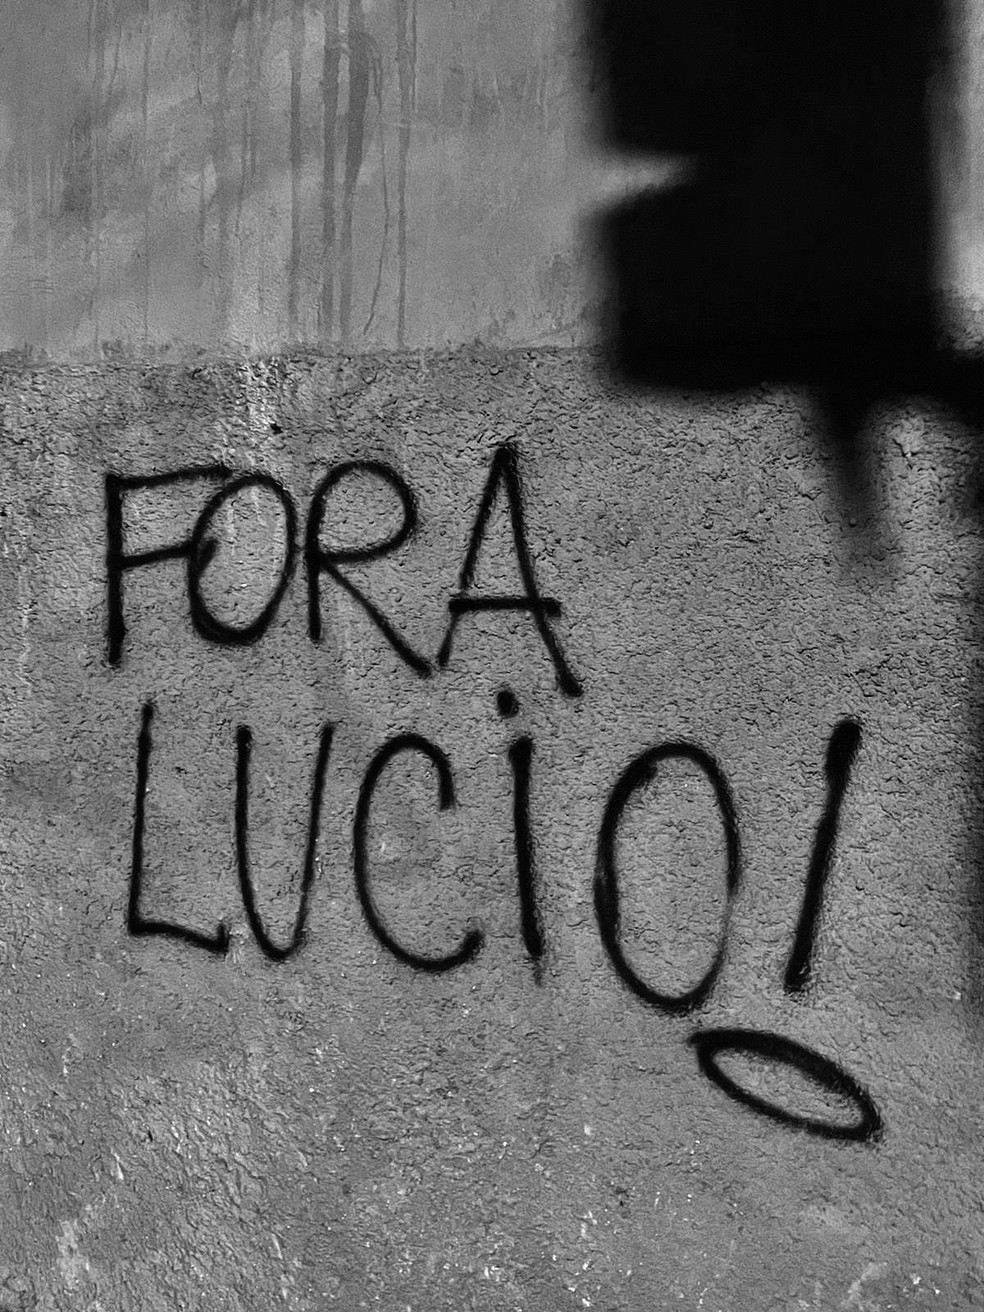 Muros de São Januário, estádio do Vasco, amanhecem pichados contra o CEO Lúcio Barbosa — Foto: Reprodução